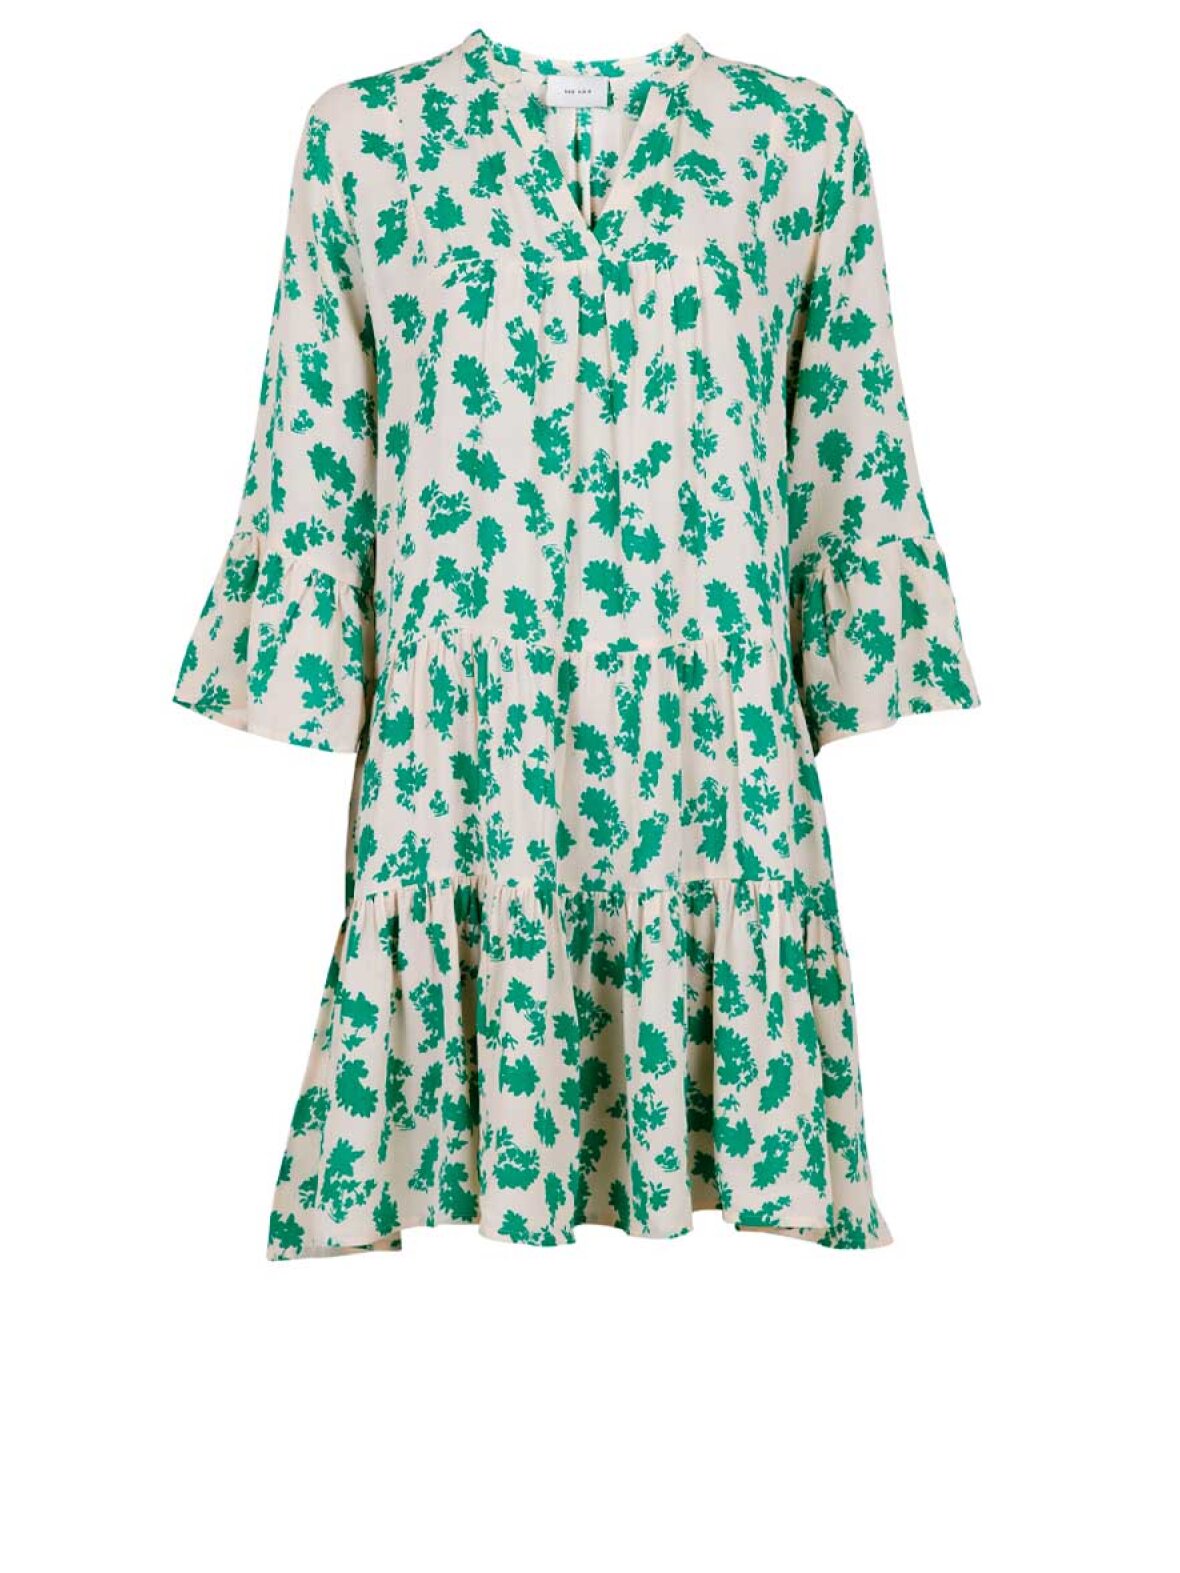 Hængsel Kemiker Let at ske A'POKE - Neo Noir Gunvor Primerose Dress Green - Shop mønstret kjole